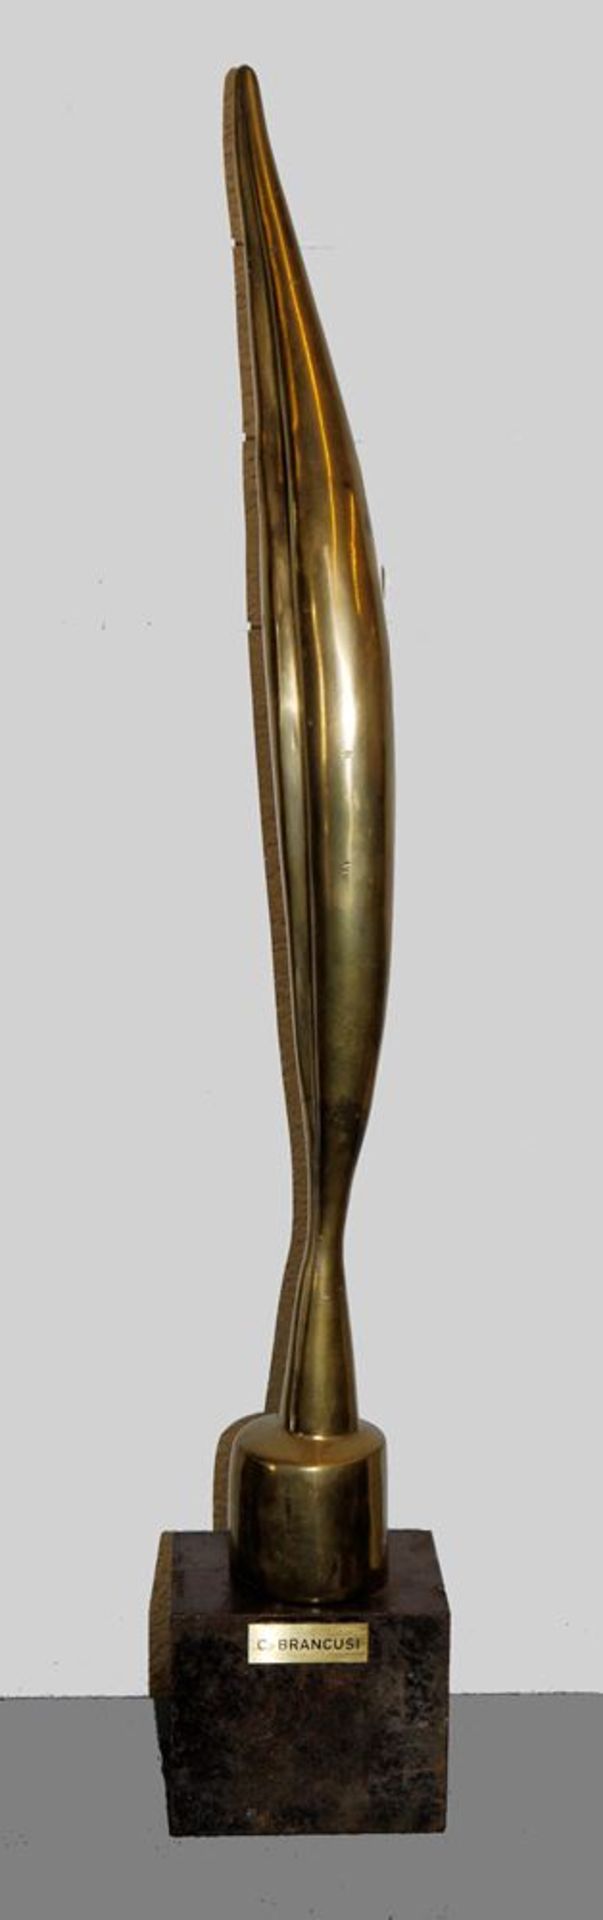 Constantin Brancusi, nach, "Bird in space", postume, verkleinerte Bronzeplastik 1960/70er Jahre, na